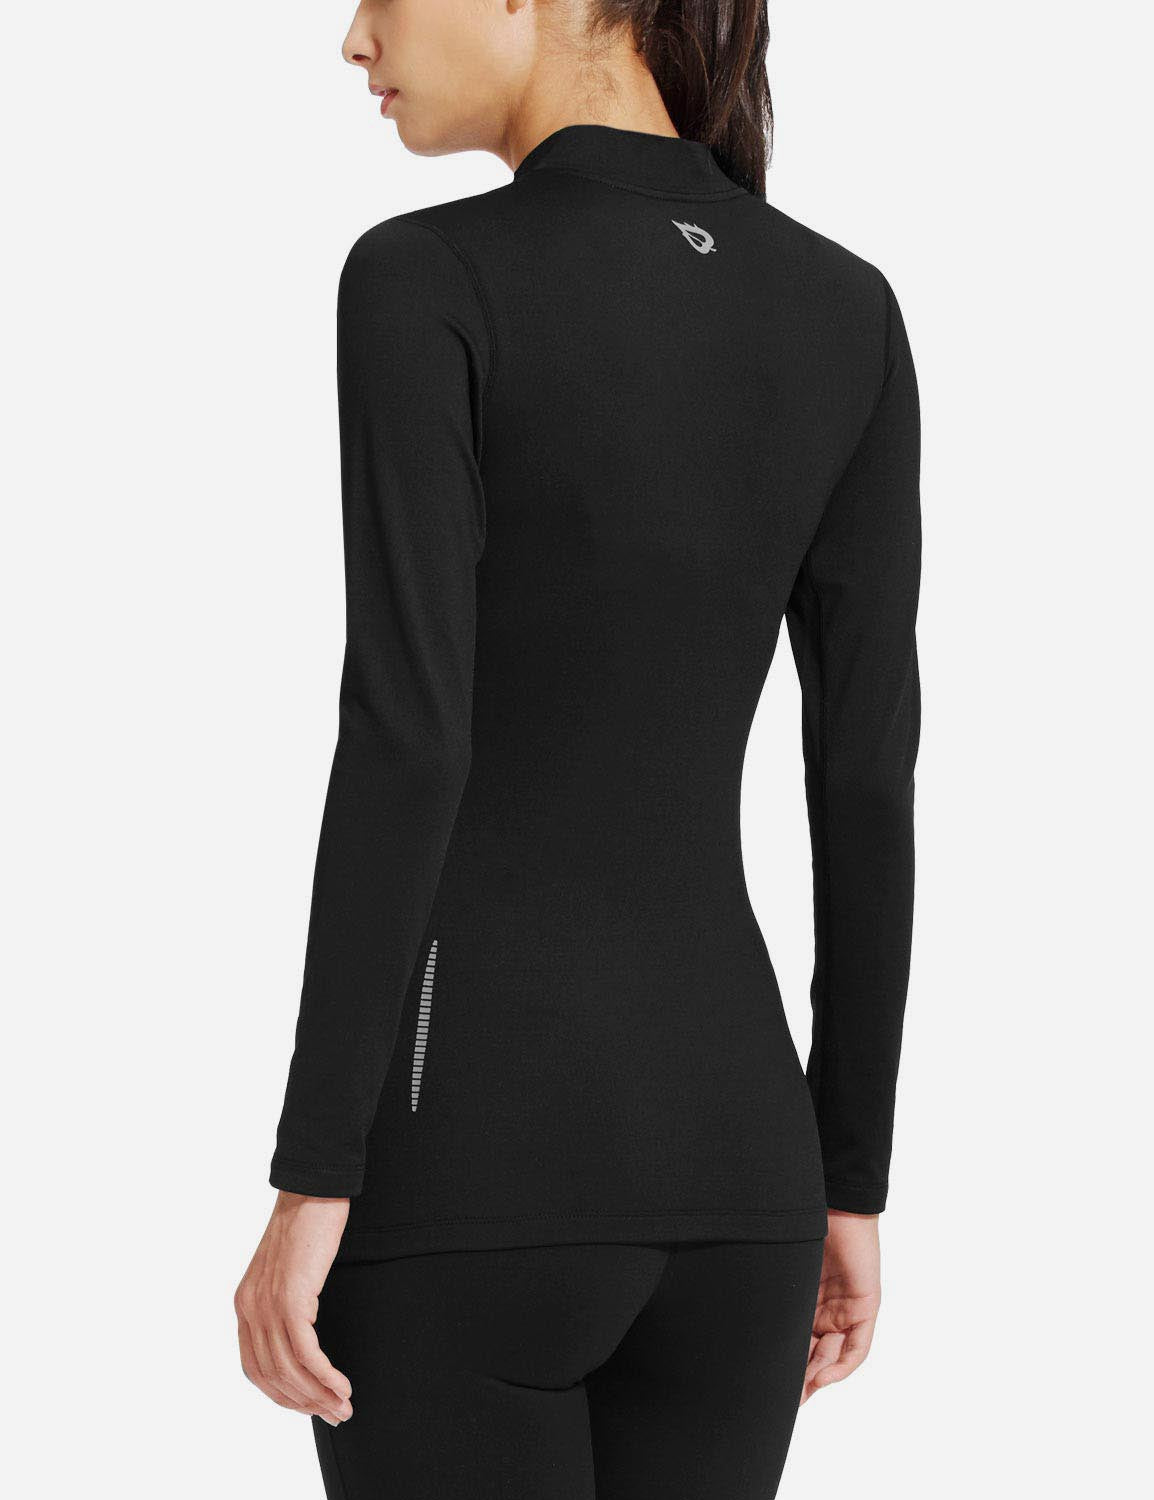 Baleaf Women's Basic Compression Mock-Neck Long Sleeved Shirt abd166 Black Side